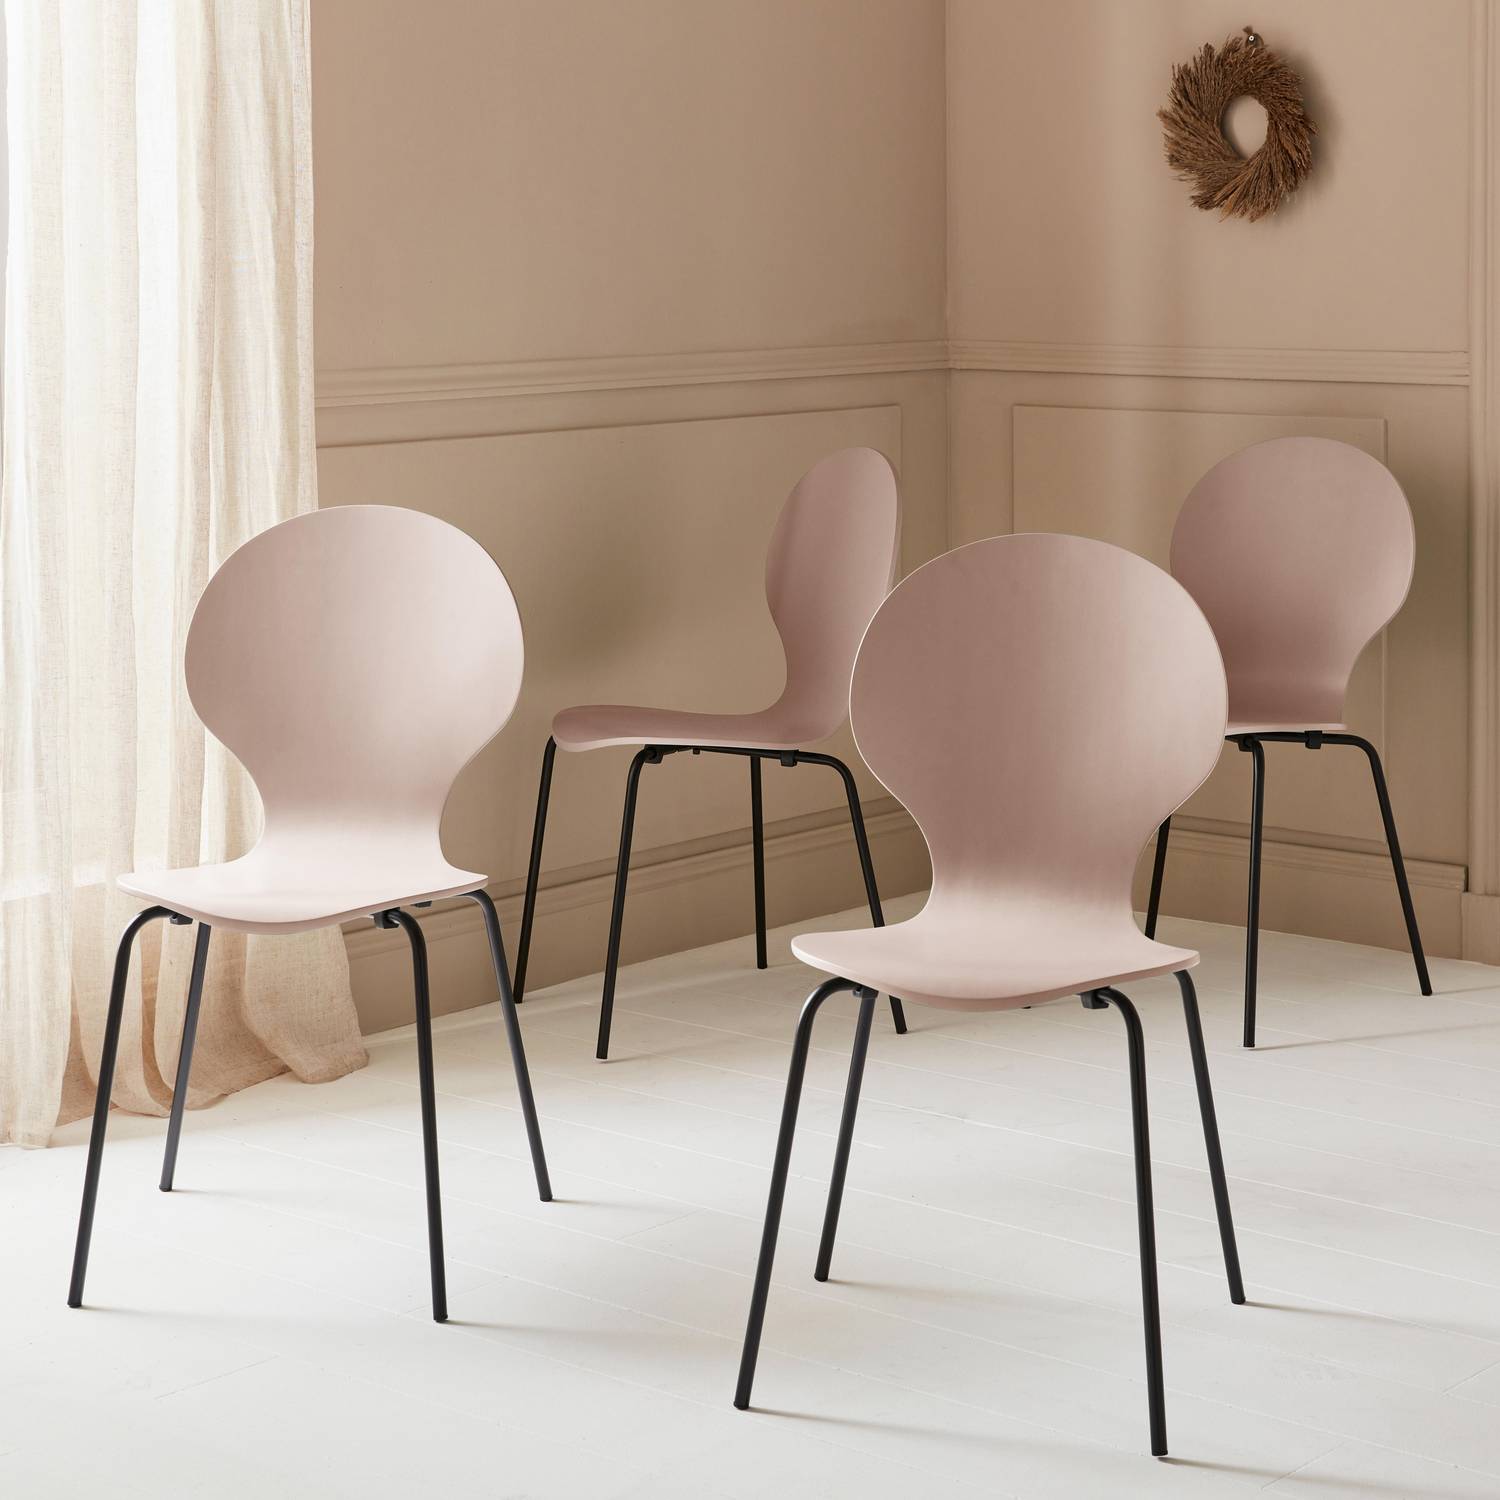 Juego de 4 sillas apilables retro rosa, madera de hevea y contrachapada, patas de acero, Naomi, A 43 x P 48 x Alt 87cm Photo2